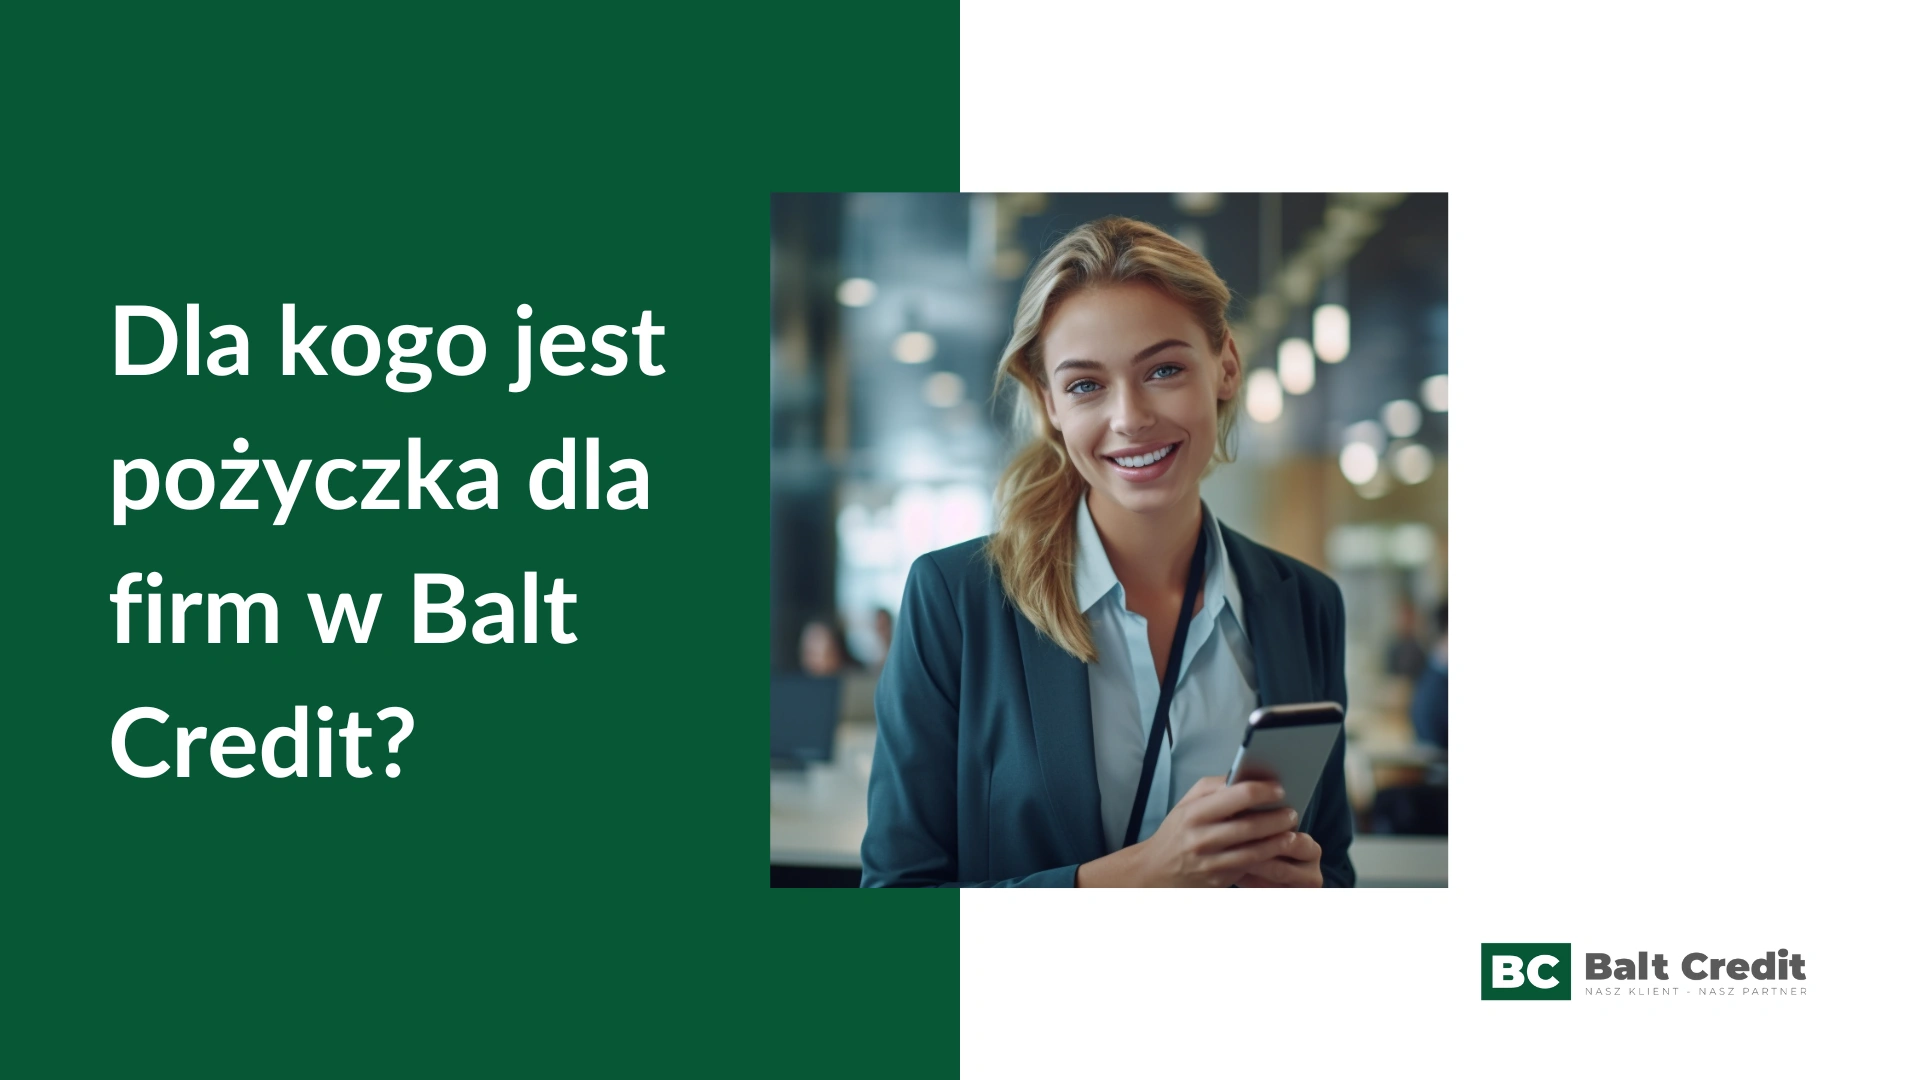 Dla kogo jest pożyczka dla firm online w Balt Credit?